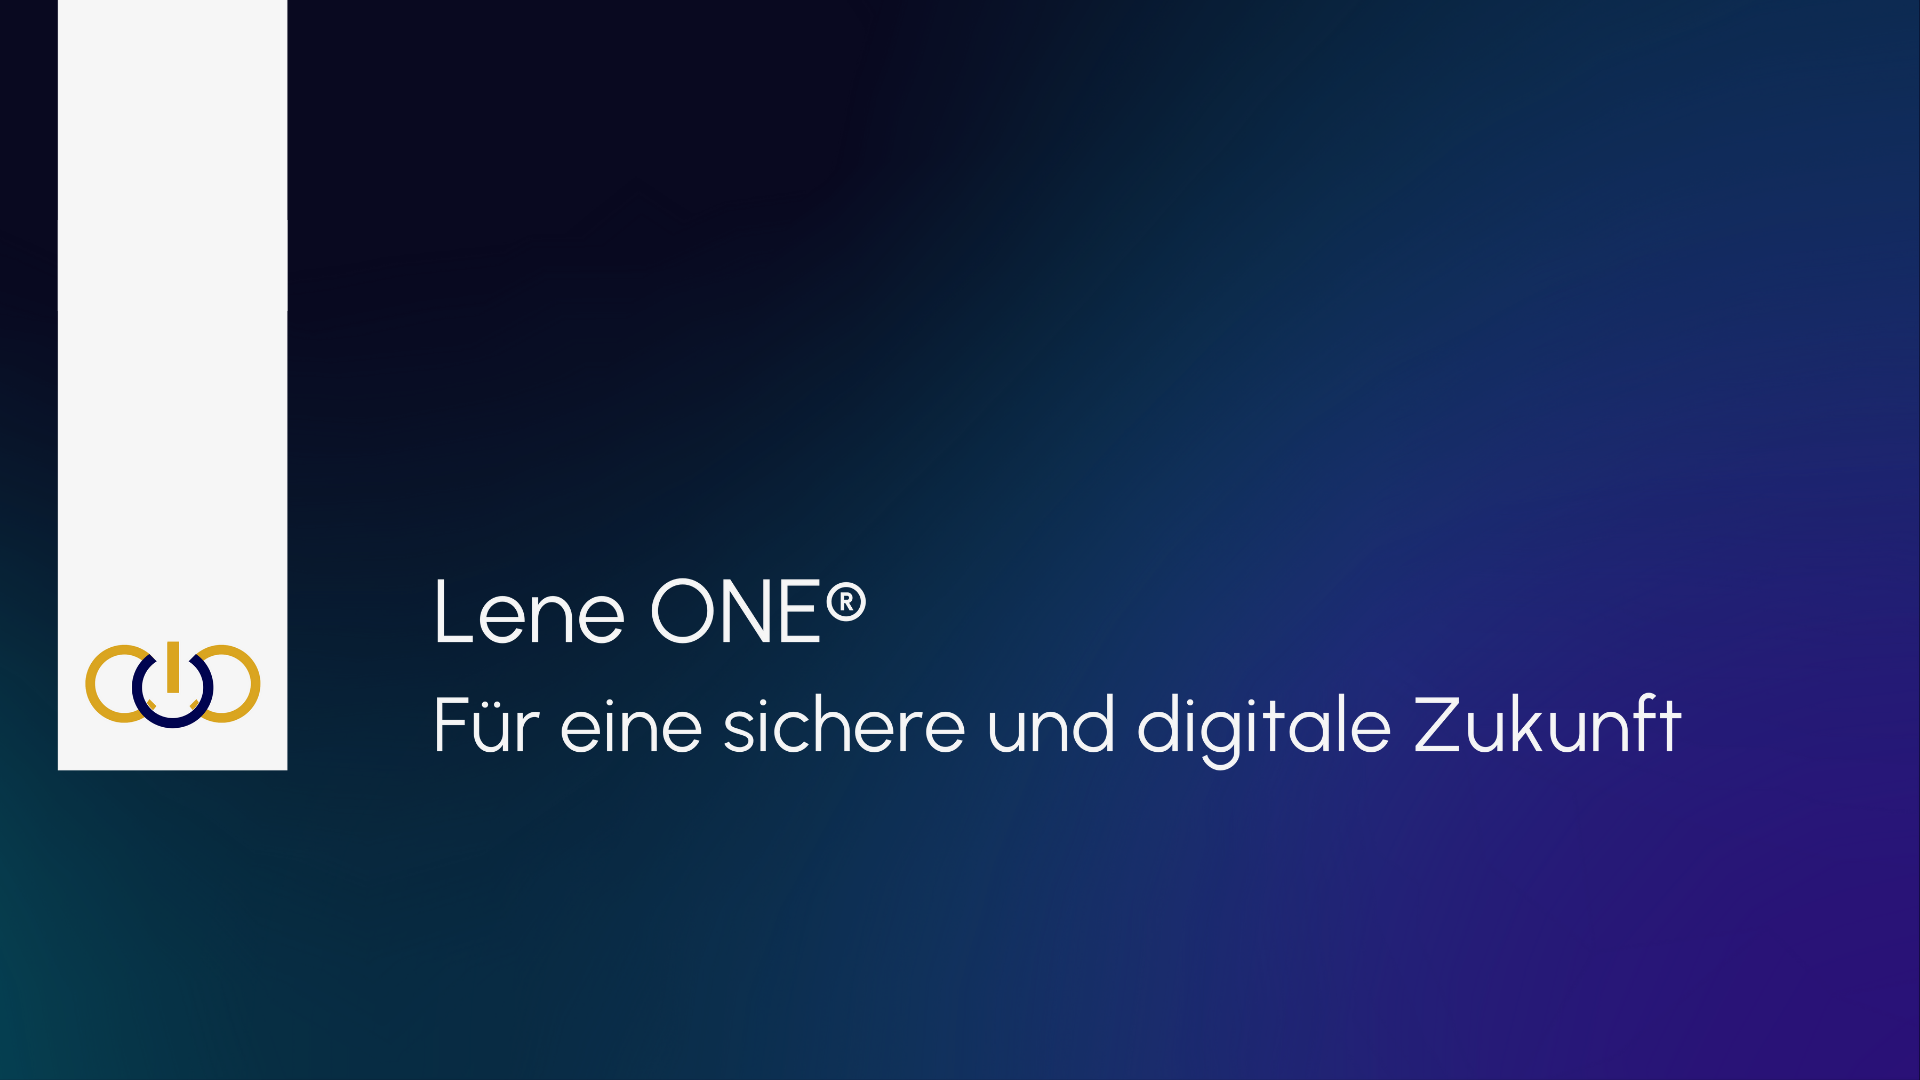 Lene ONE®